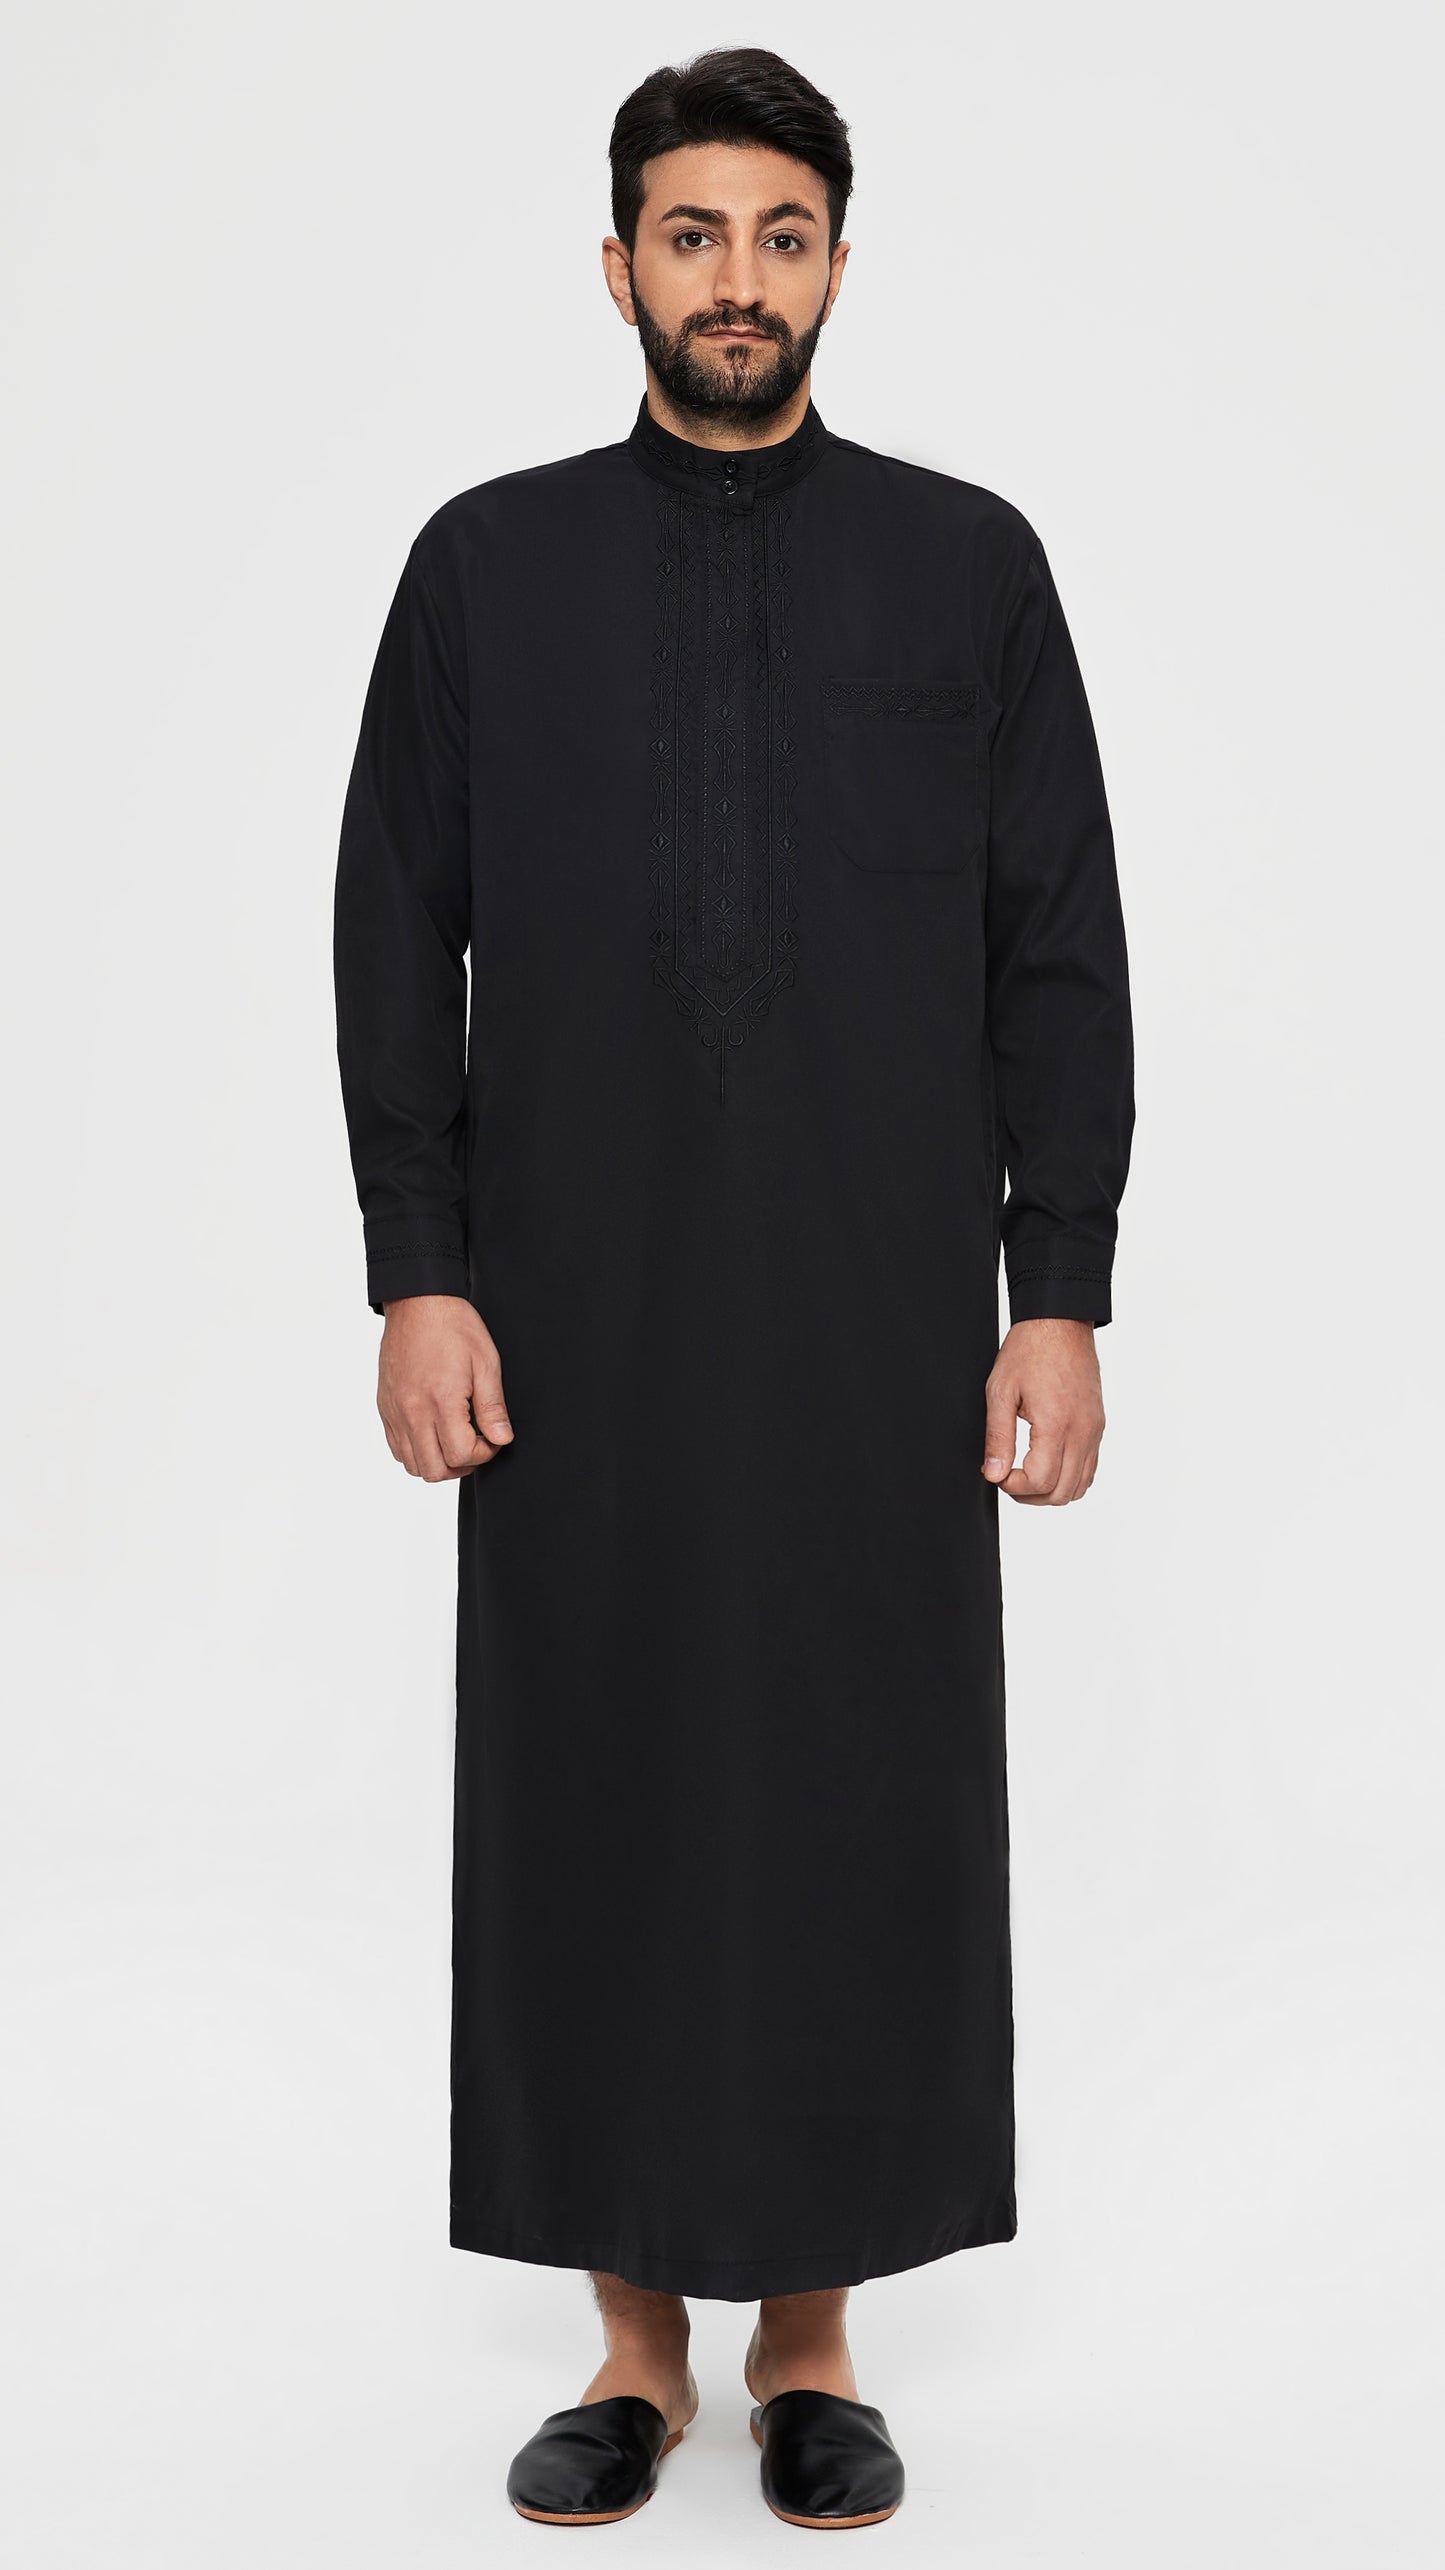 Qamis - Saoudien Noir avec broderie cravate